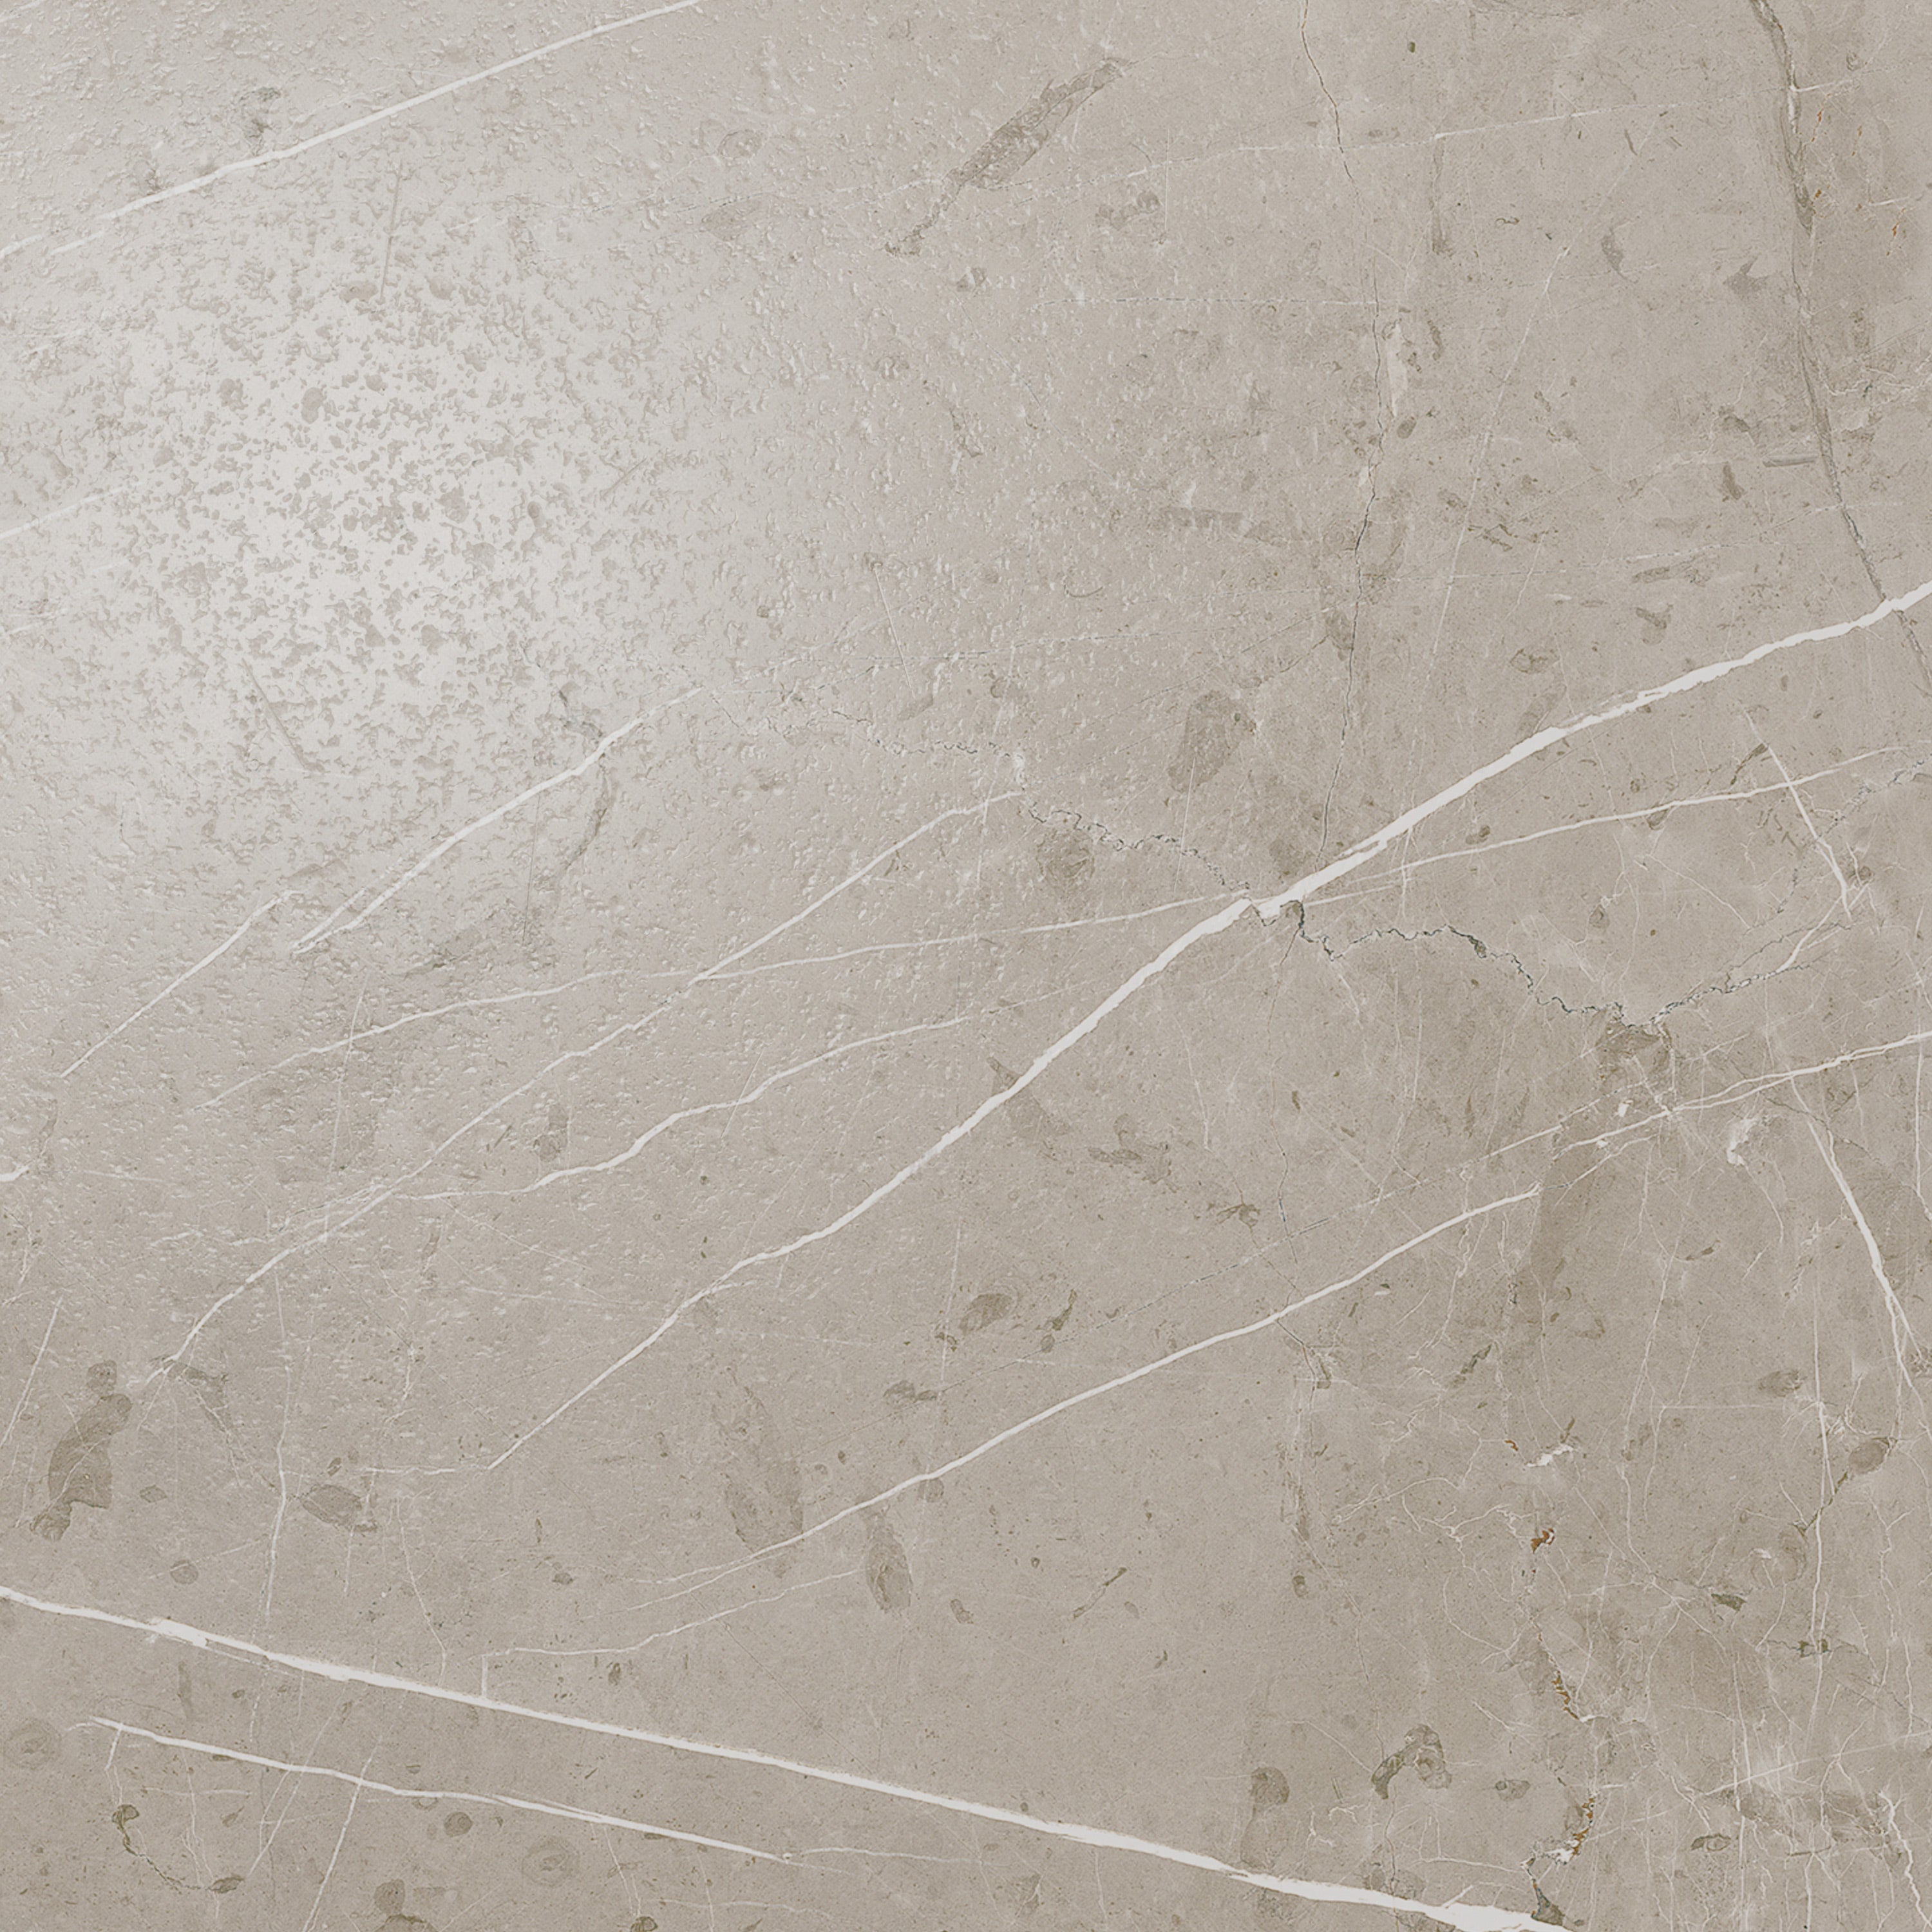 Fundo Top revêtement prêt-à-poser pour receveur Primo et Ligno Plus, aspect marbre gris-beige